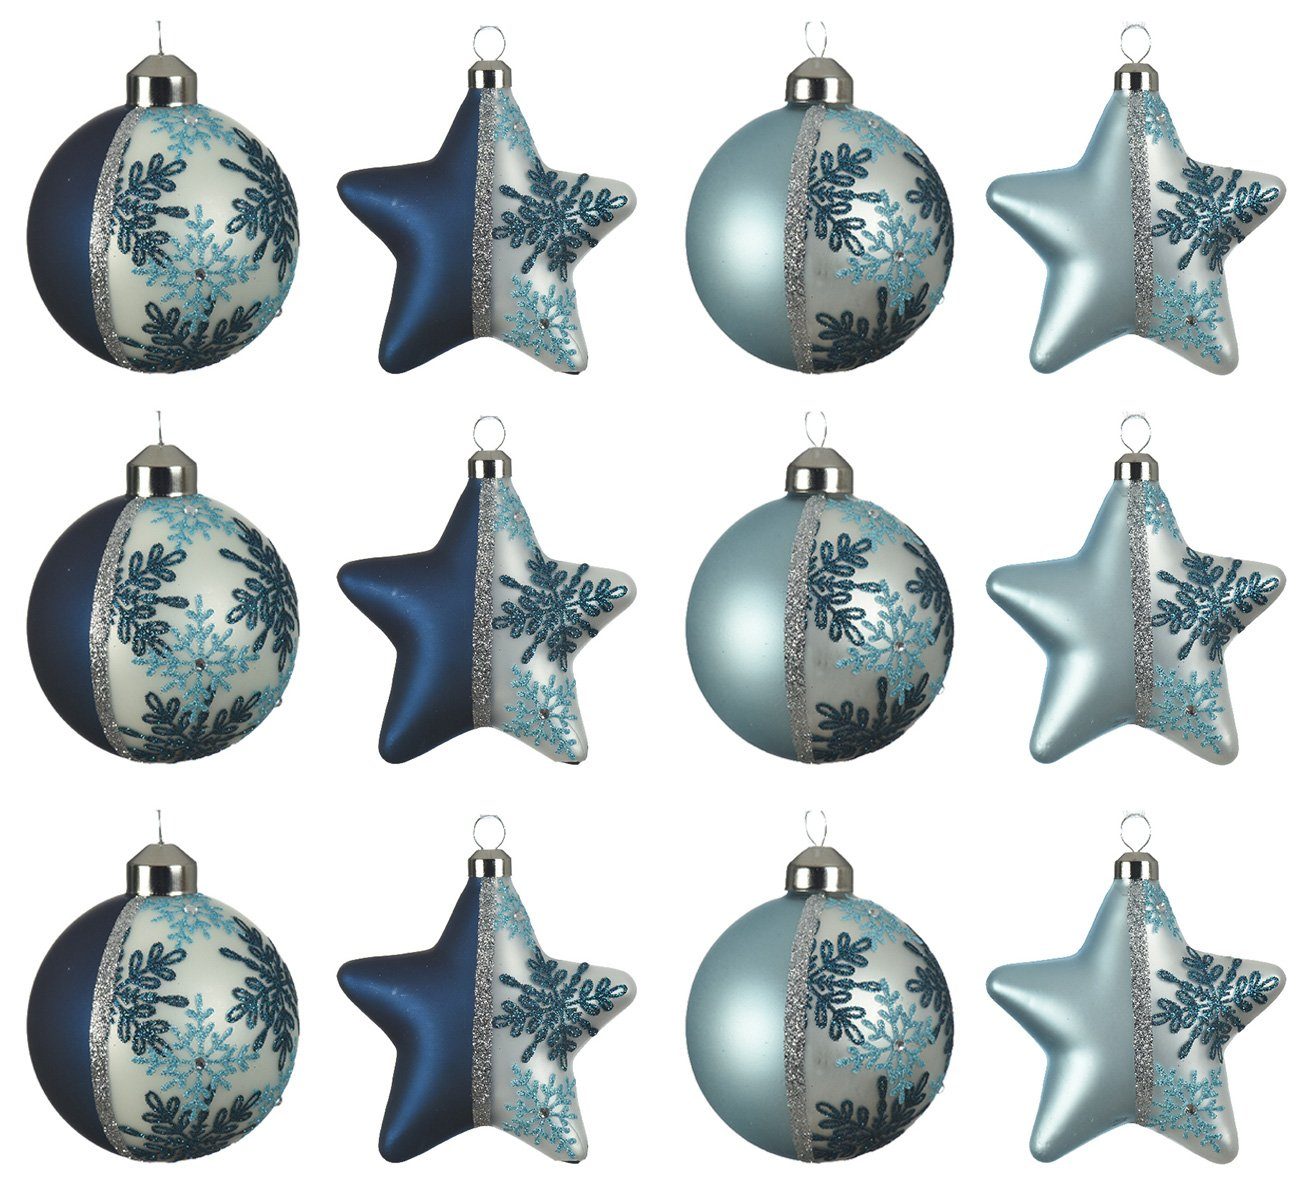 Glas blau decorations Set mix Decoris 8cm season mit Schneeflocken Weihnachtsbaumkugel, Motiv Weihnachtskugeln 12er